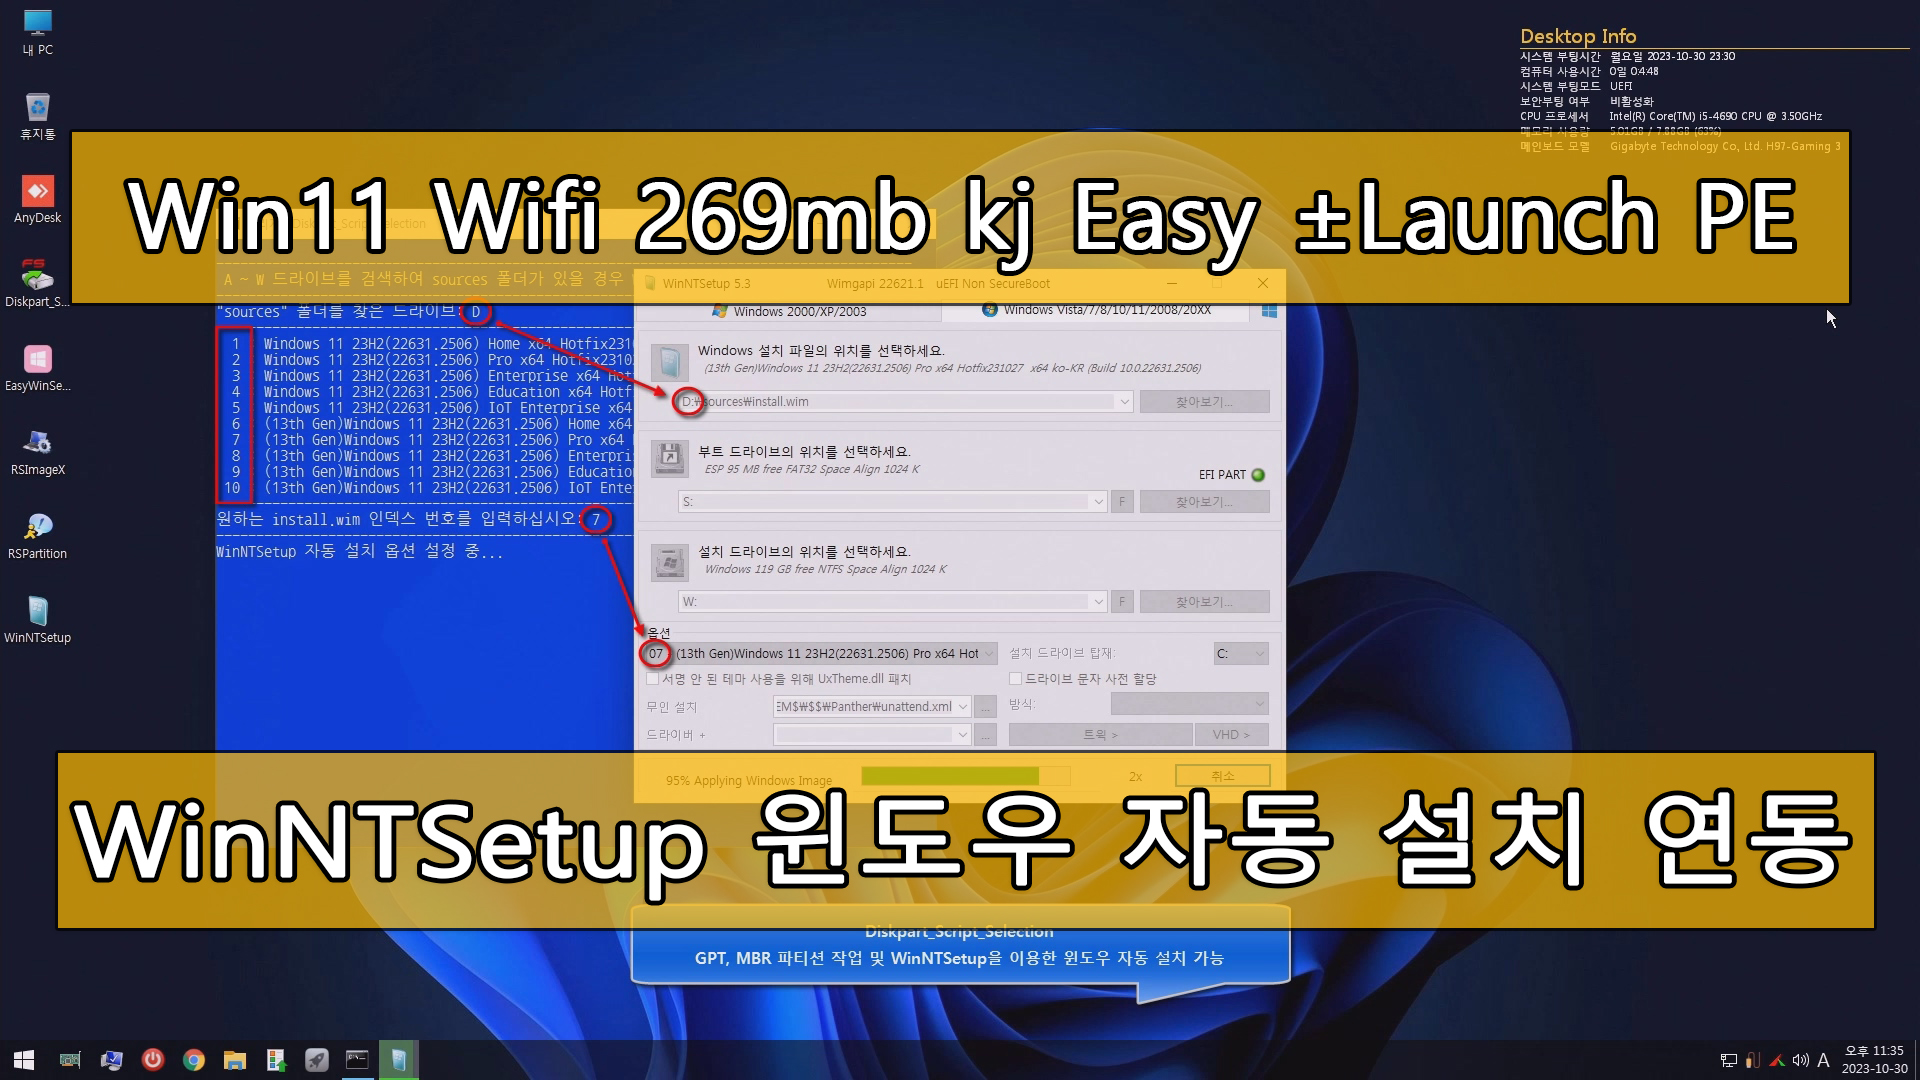 Win11 Wifi 269mb kj Easy ±Launch PE copy.jpg